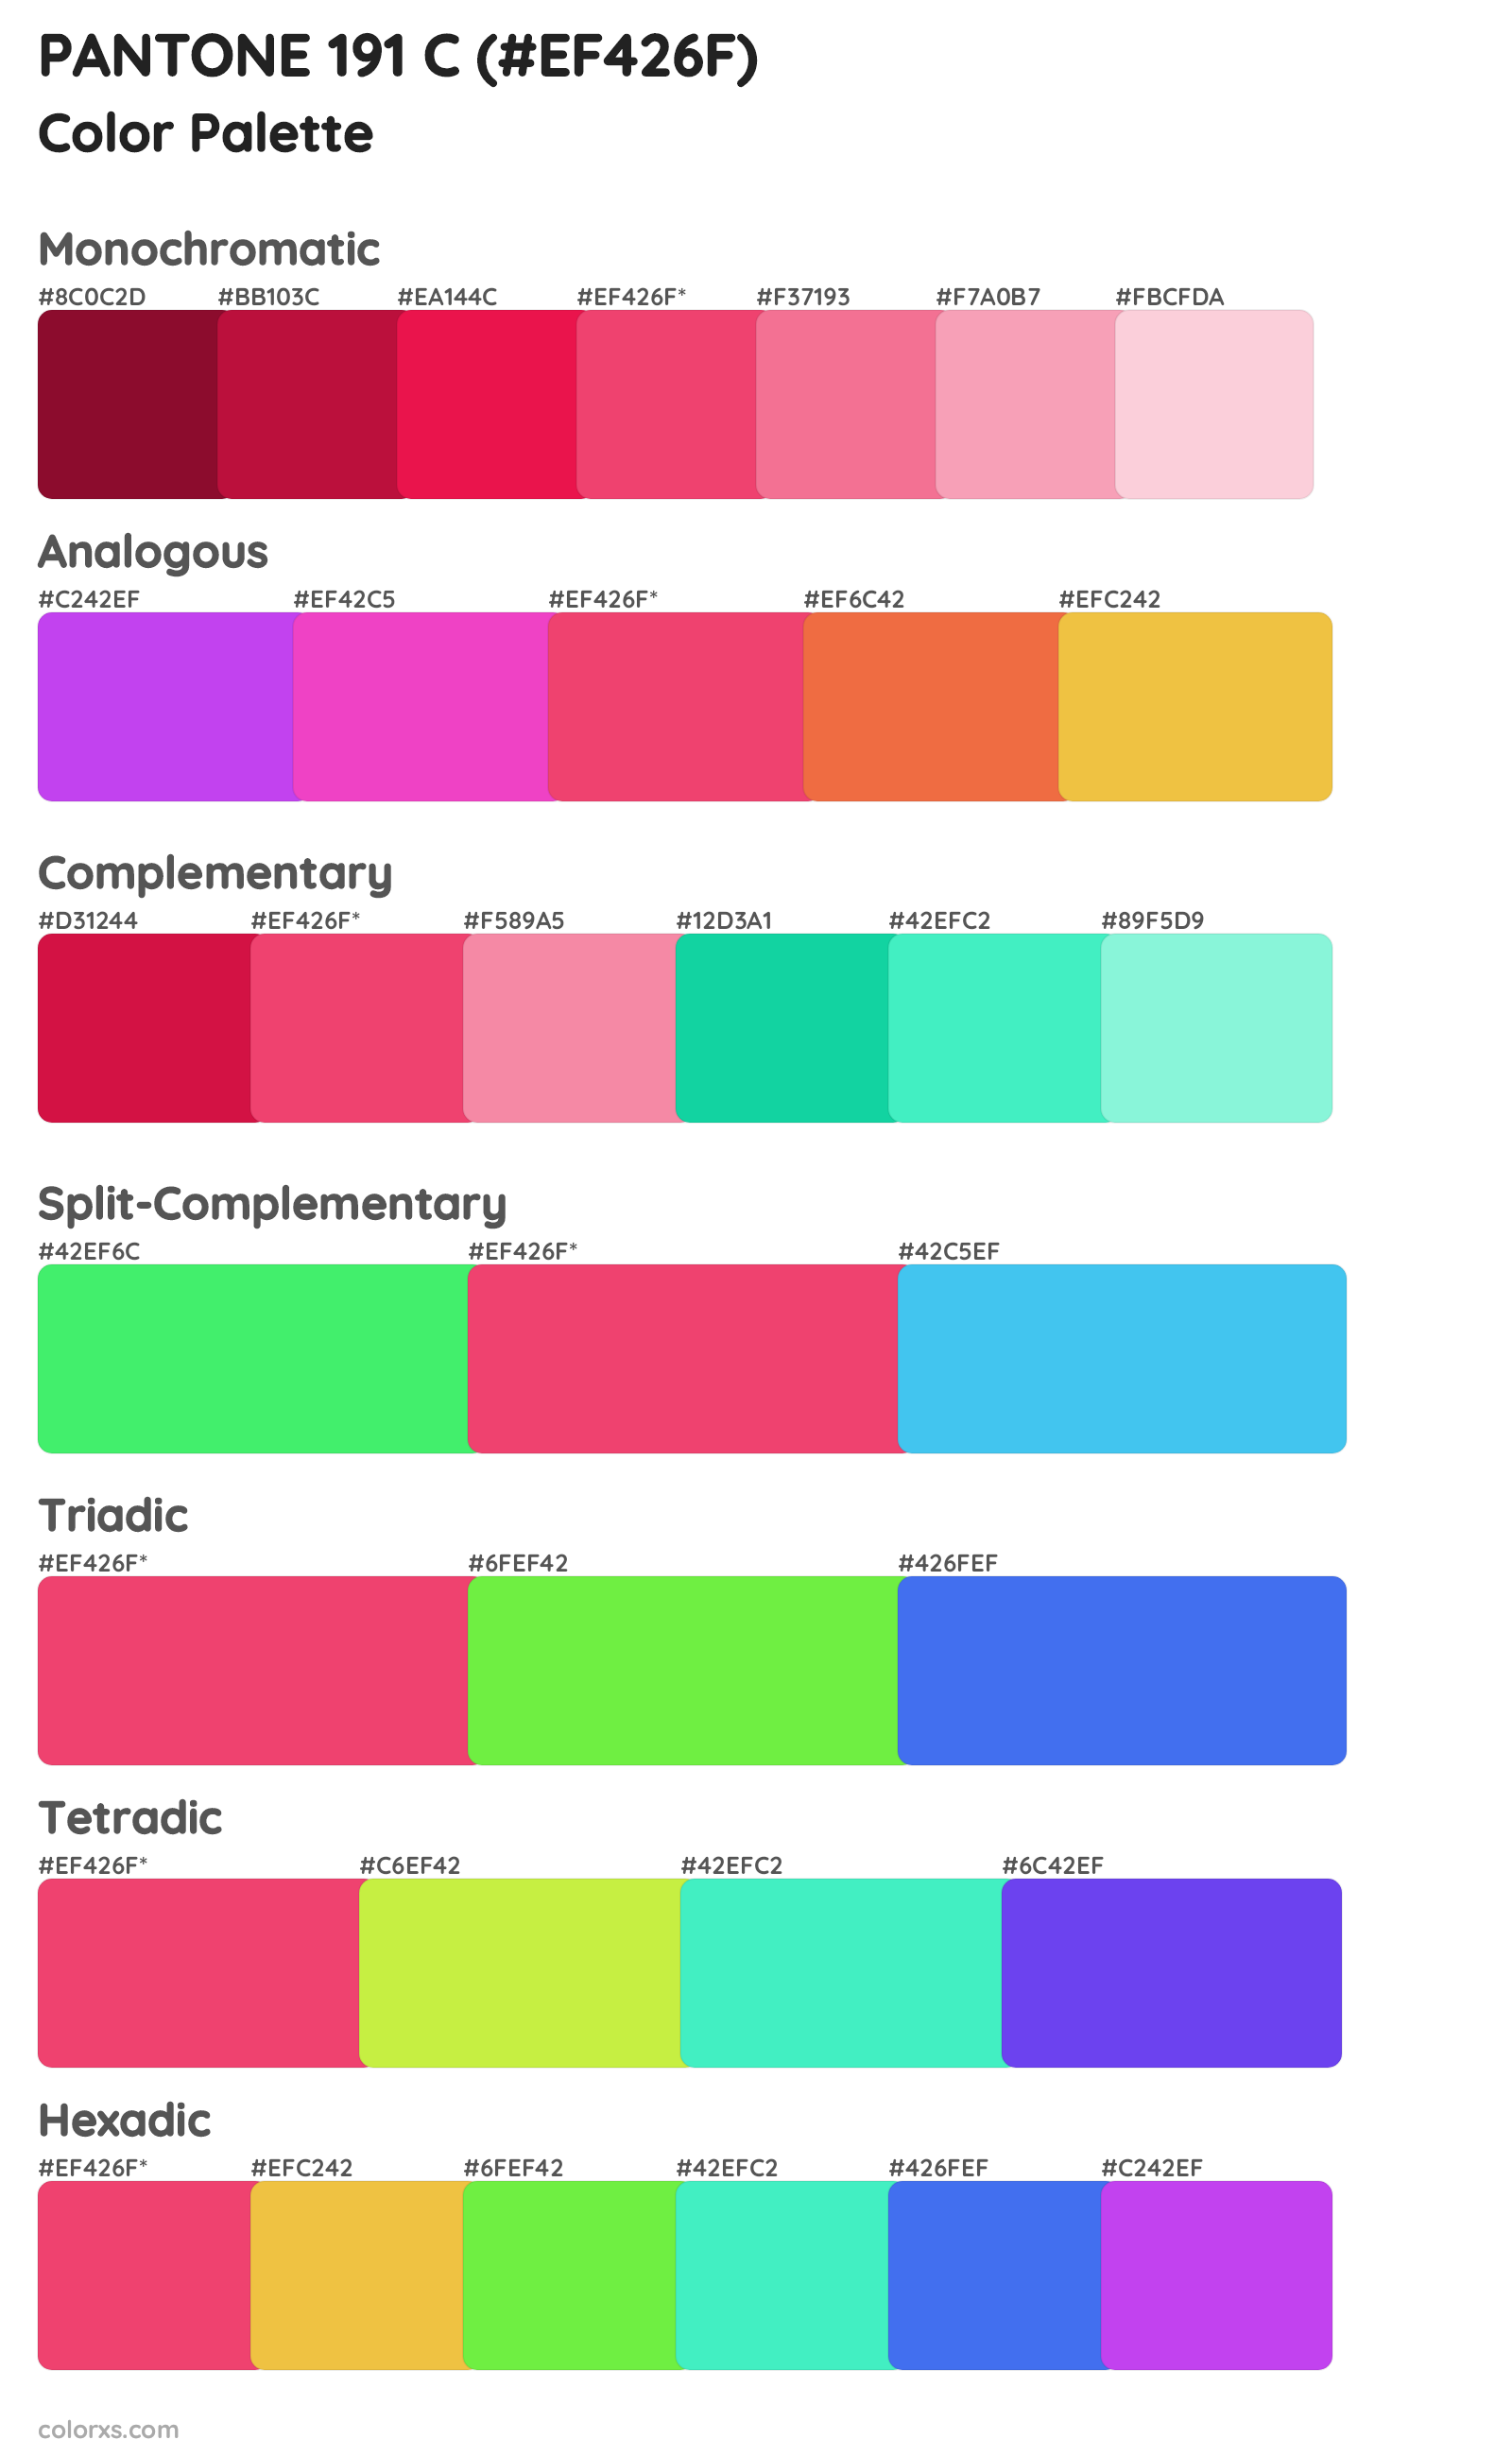 PANTONE 191 C color palettes and color scheme combinations - colorxs.com